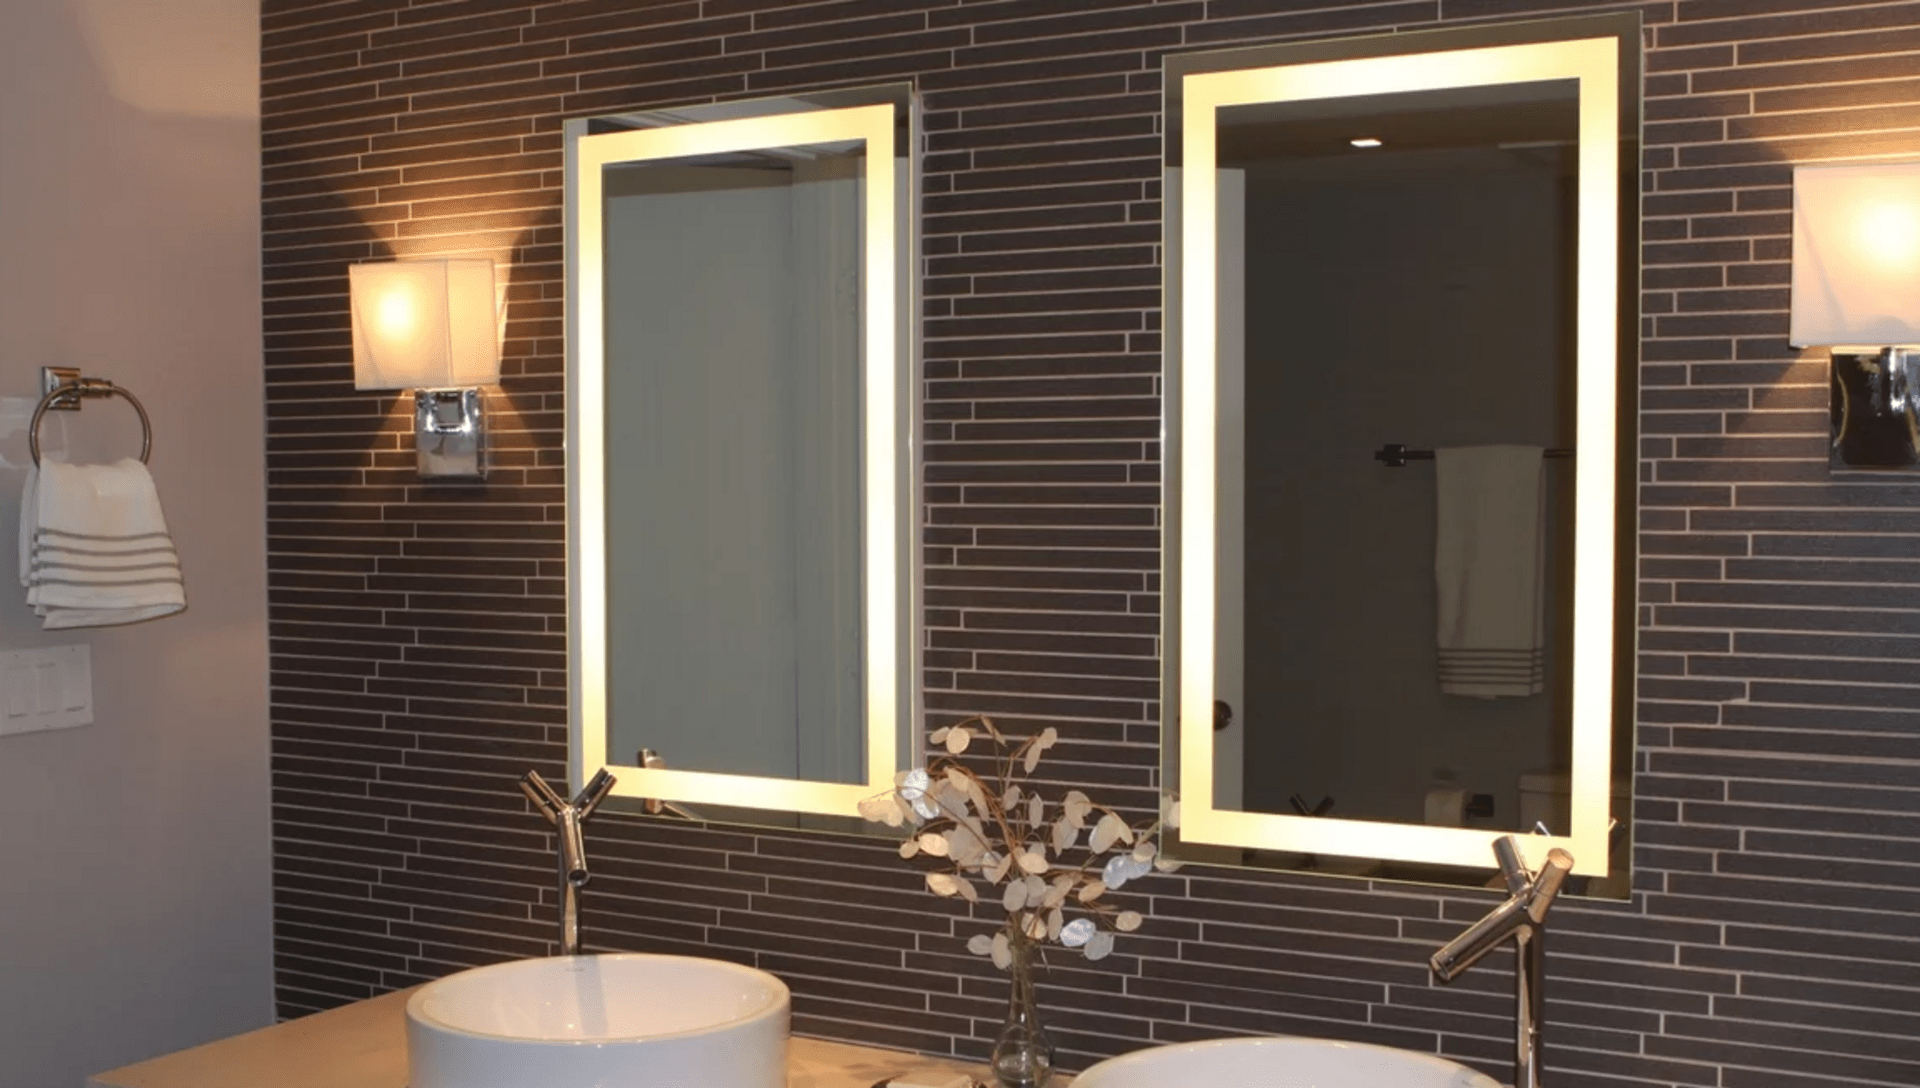 Виды подсветки для зеркала в ванной, варианты установки и подключения 35 - ДиванеТТо